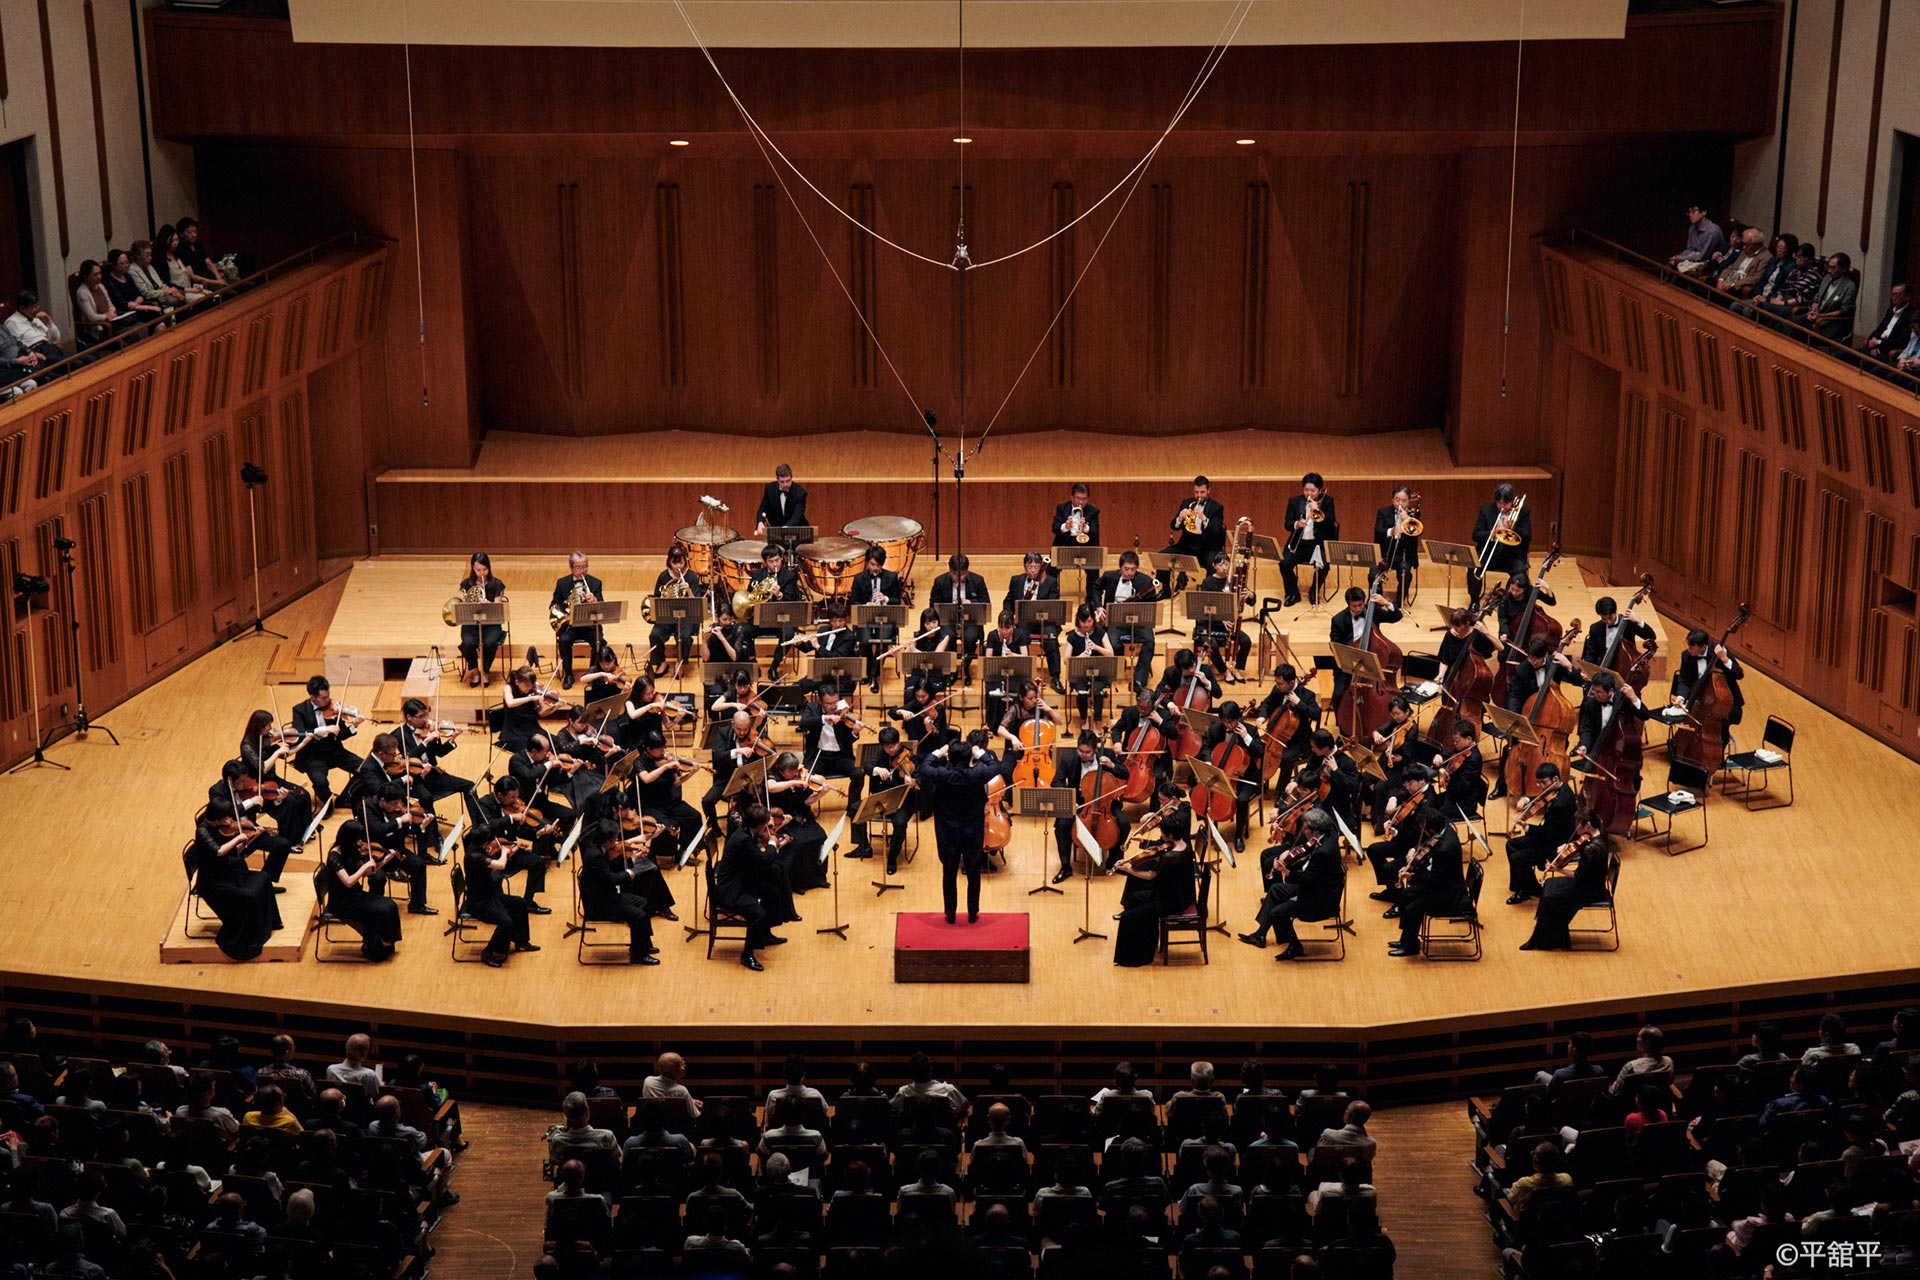  ソニックシティ2020シリーズ 日本フィルハーモニー交響楽団 | ソニックシティ 大ホール (2020年11月13日)